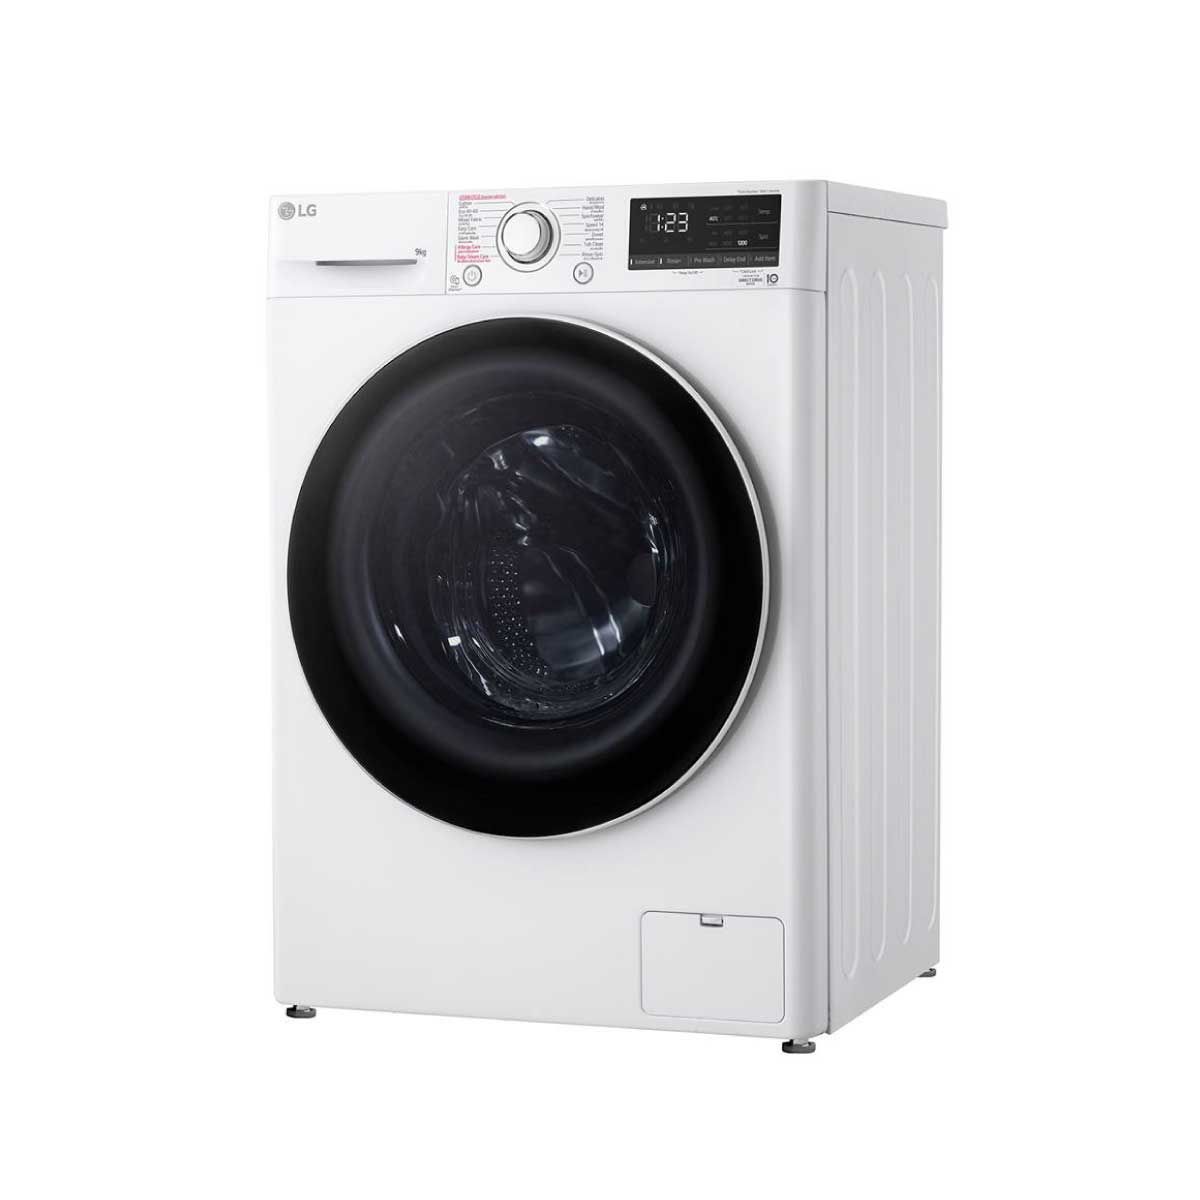 LG เครื่องซักผ้าฝาหน้า 9 kg  สีขาว รุ่น FV1209S5WG ระบบ AI DD